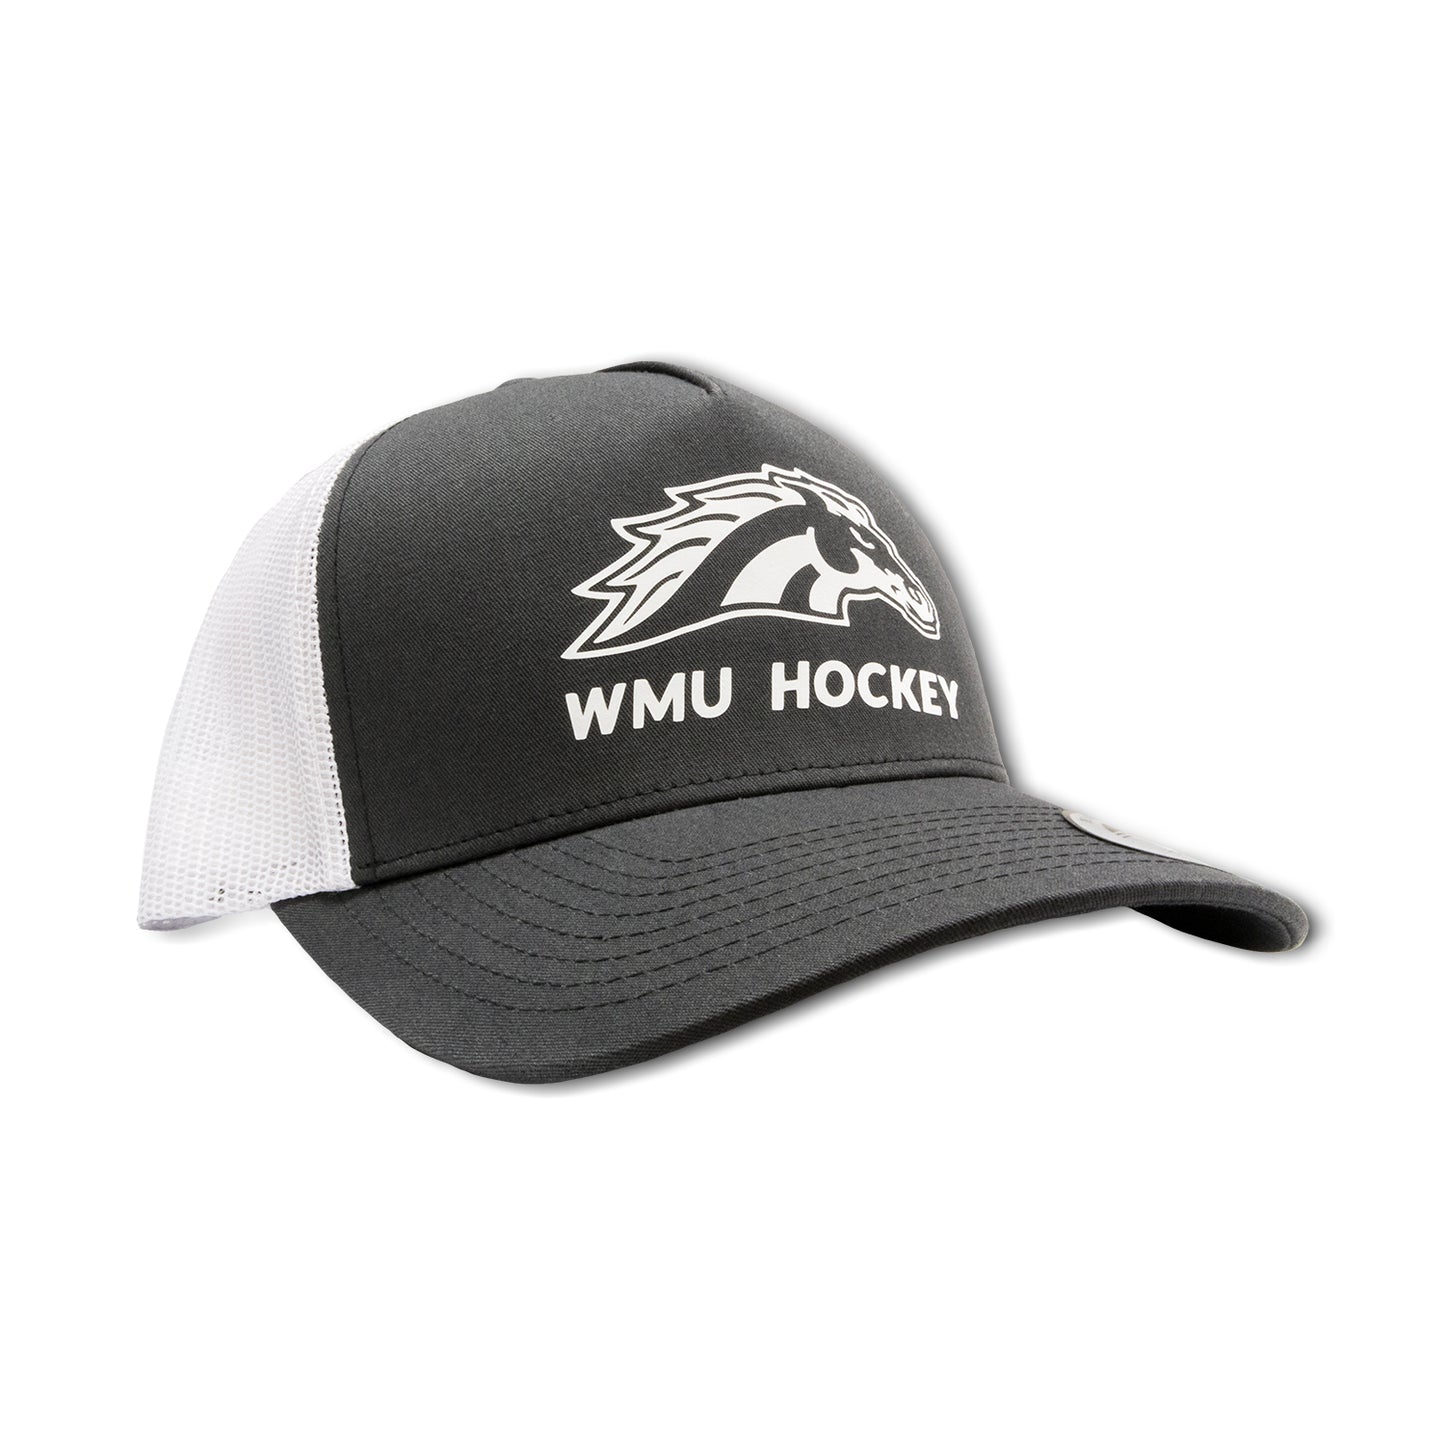 WMU Hockey Five-Panel Trucker Cap